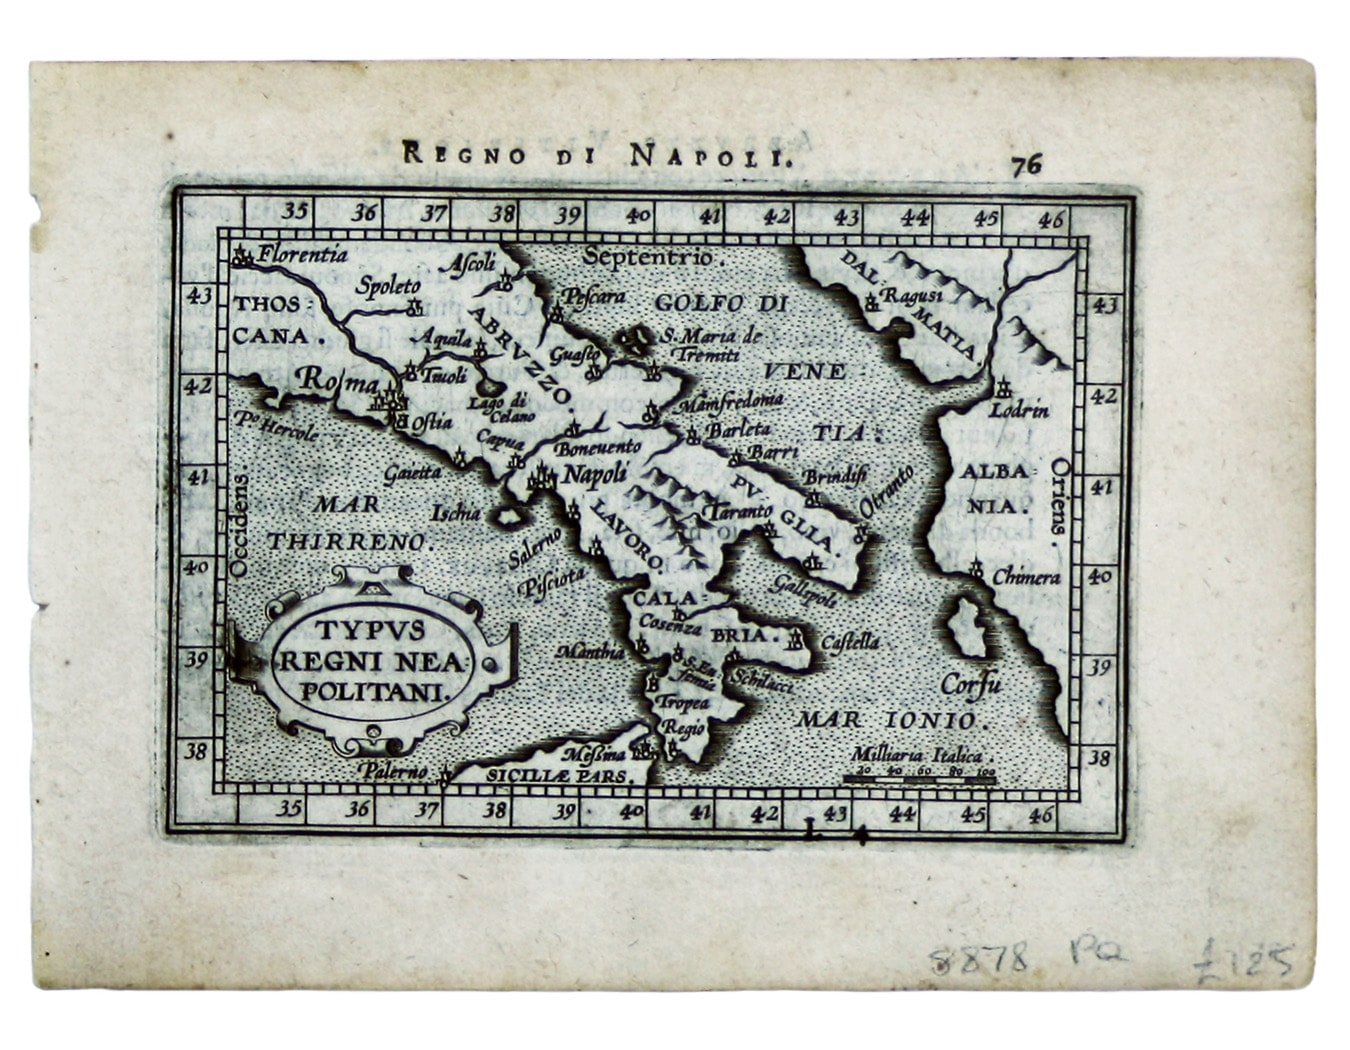 Ortelius’ Miniature Map of the Kingdom Of Naples